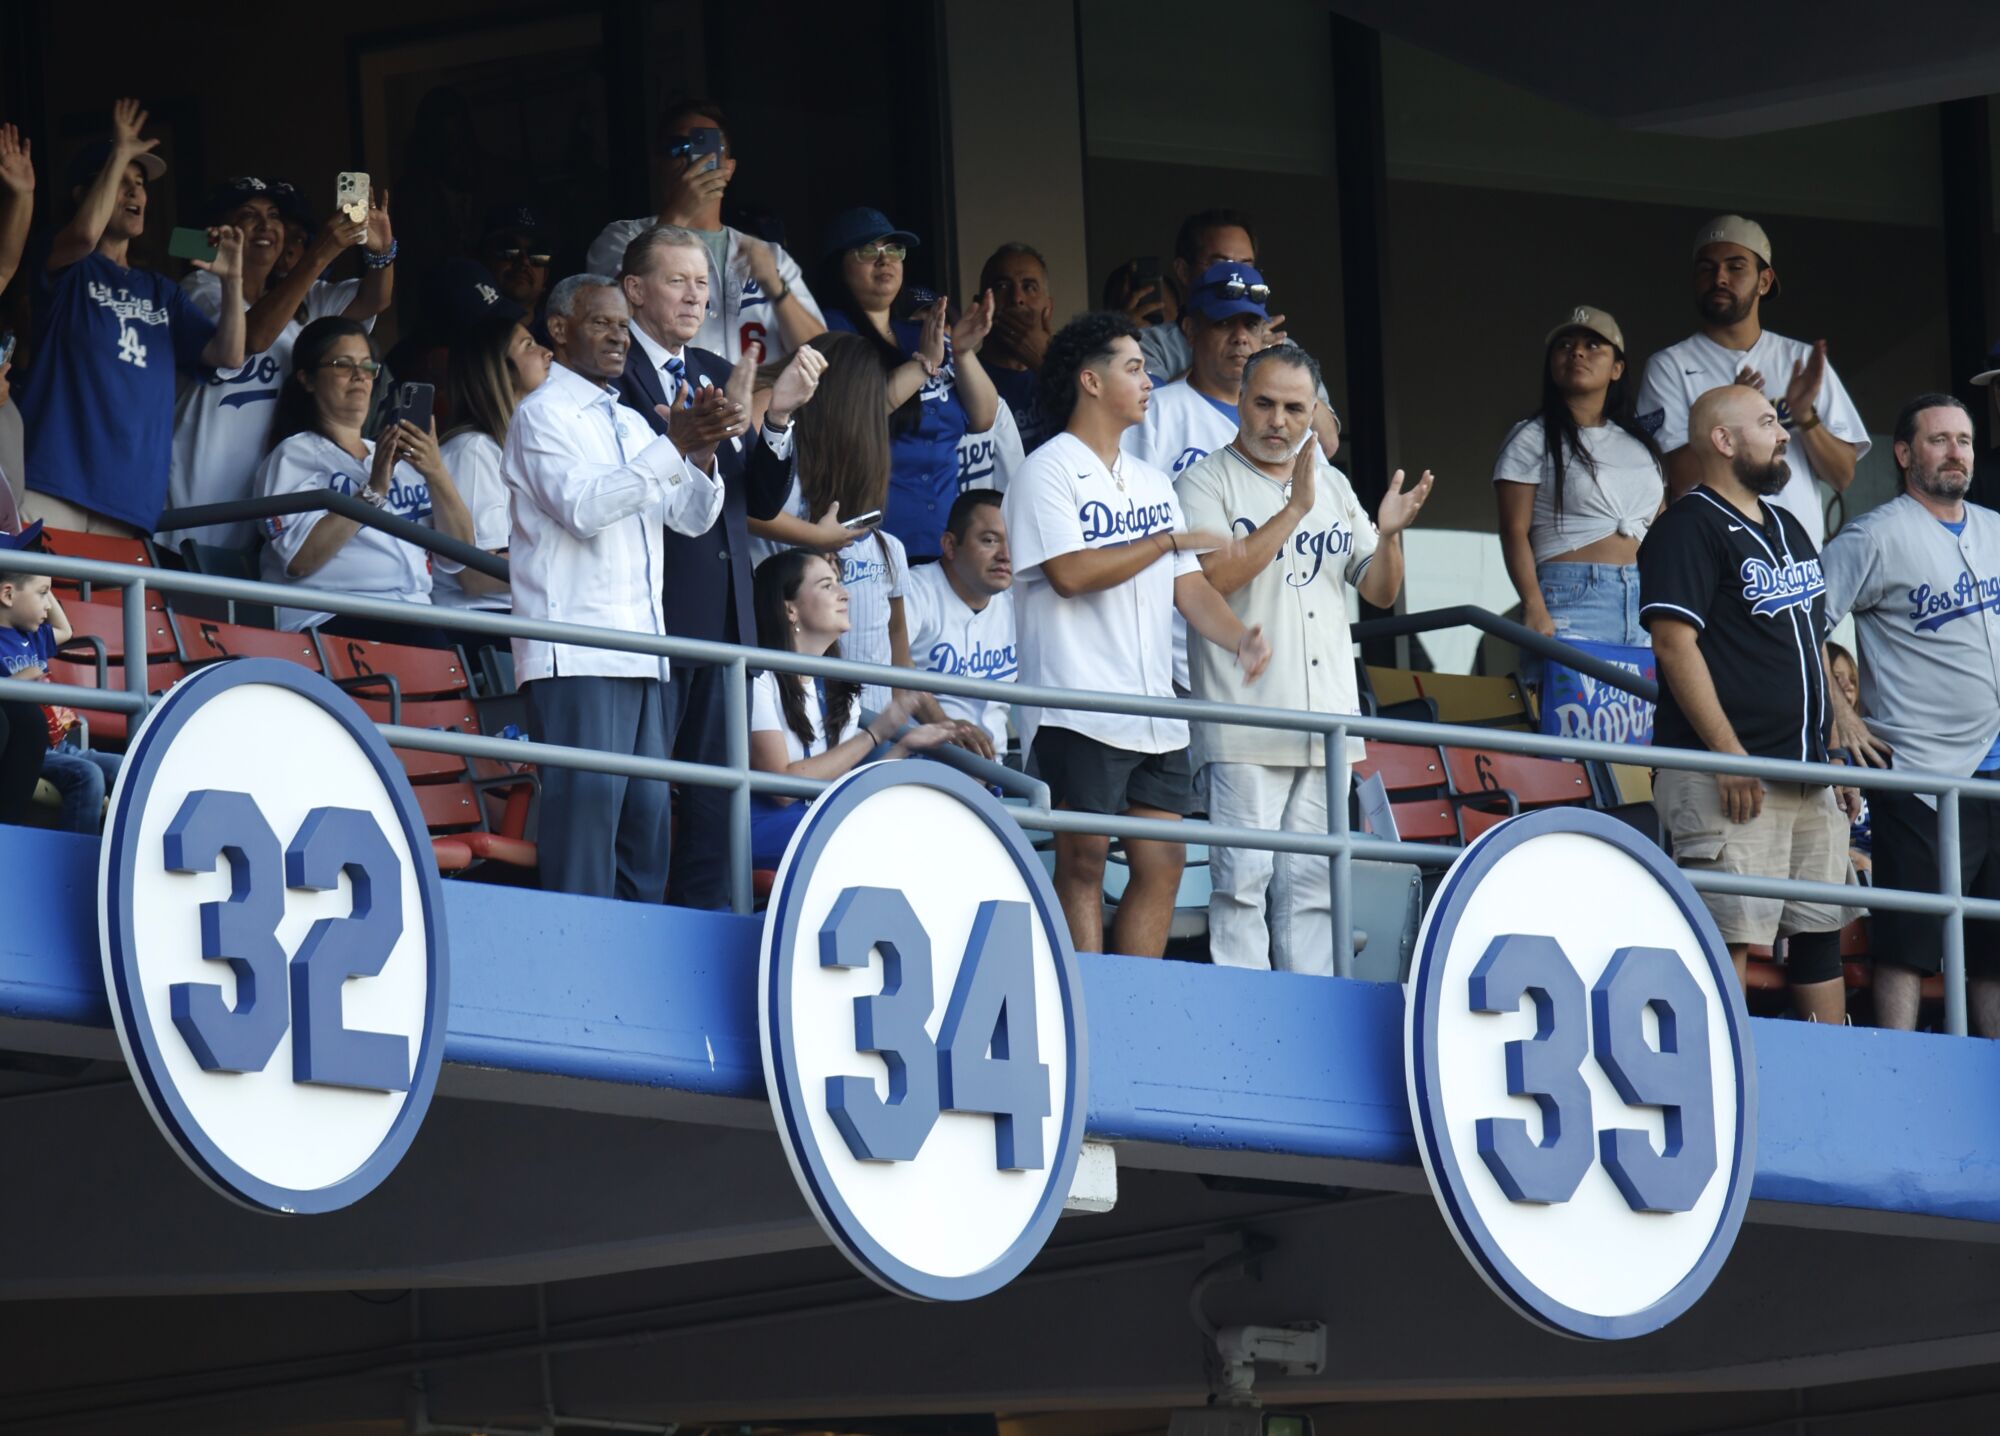 Les fans célèbrent la révélation du numéro à la retraite de Fernando Valenzuela lors d'une cérémonie au Dodger Stadium.